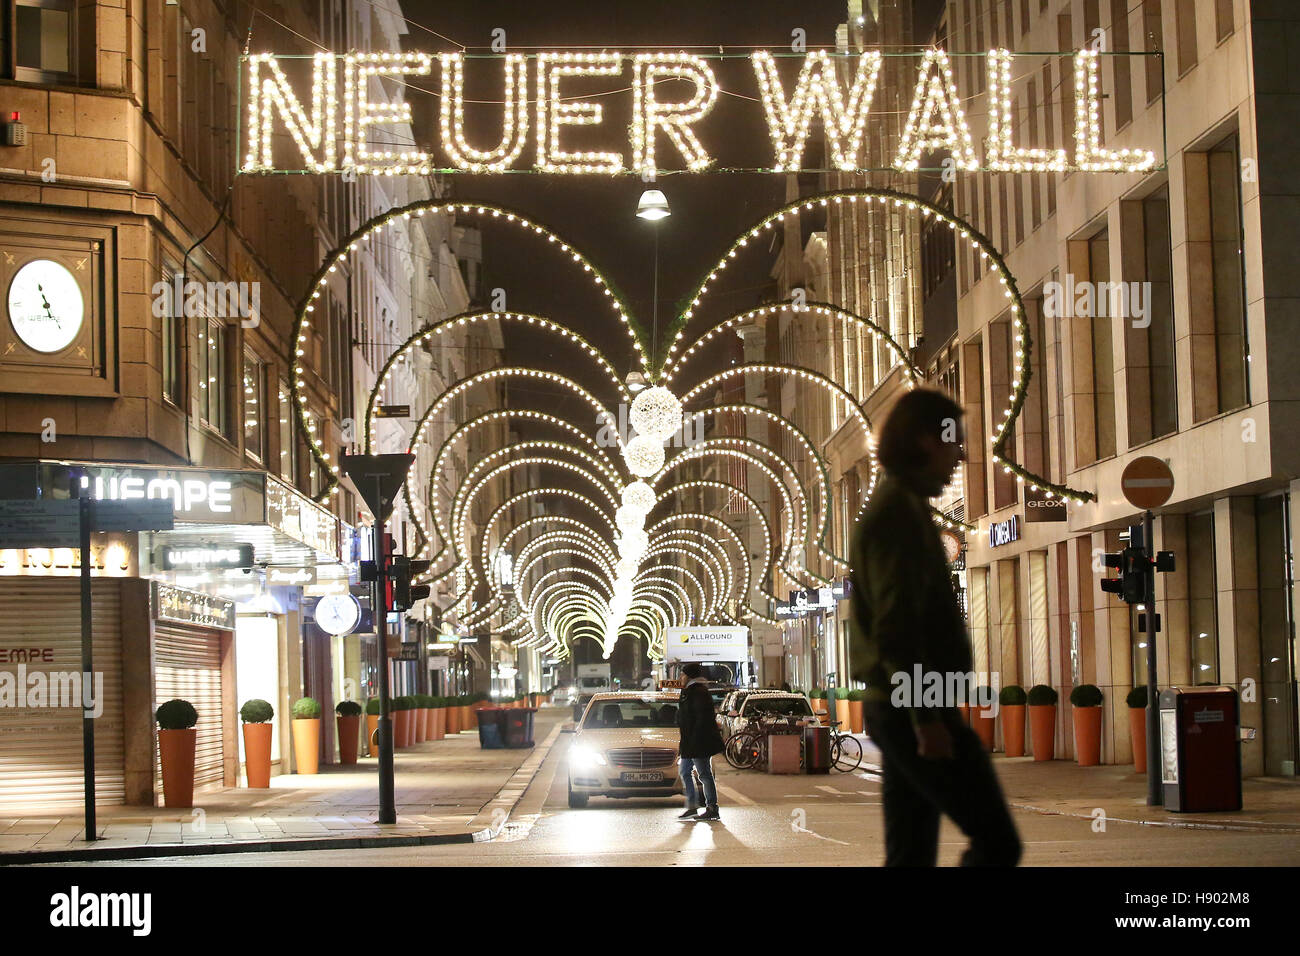 Hamburg, Deutschland. 16 Nov, 2016. Un weihnachtlichen mit Beleuchtung ist  am 16.11.2016 in der Innenstadt à Hambourg der beleuchtete Schriftzug  "Neuer Wall" zu sehen. Suis 21.11.2016 wird die am Neuen  Weihnachtsbeleuchtung angeschaltet